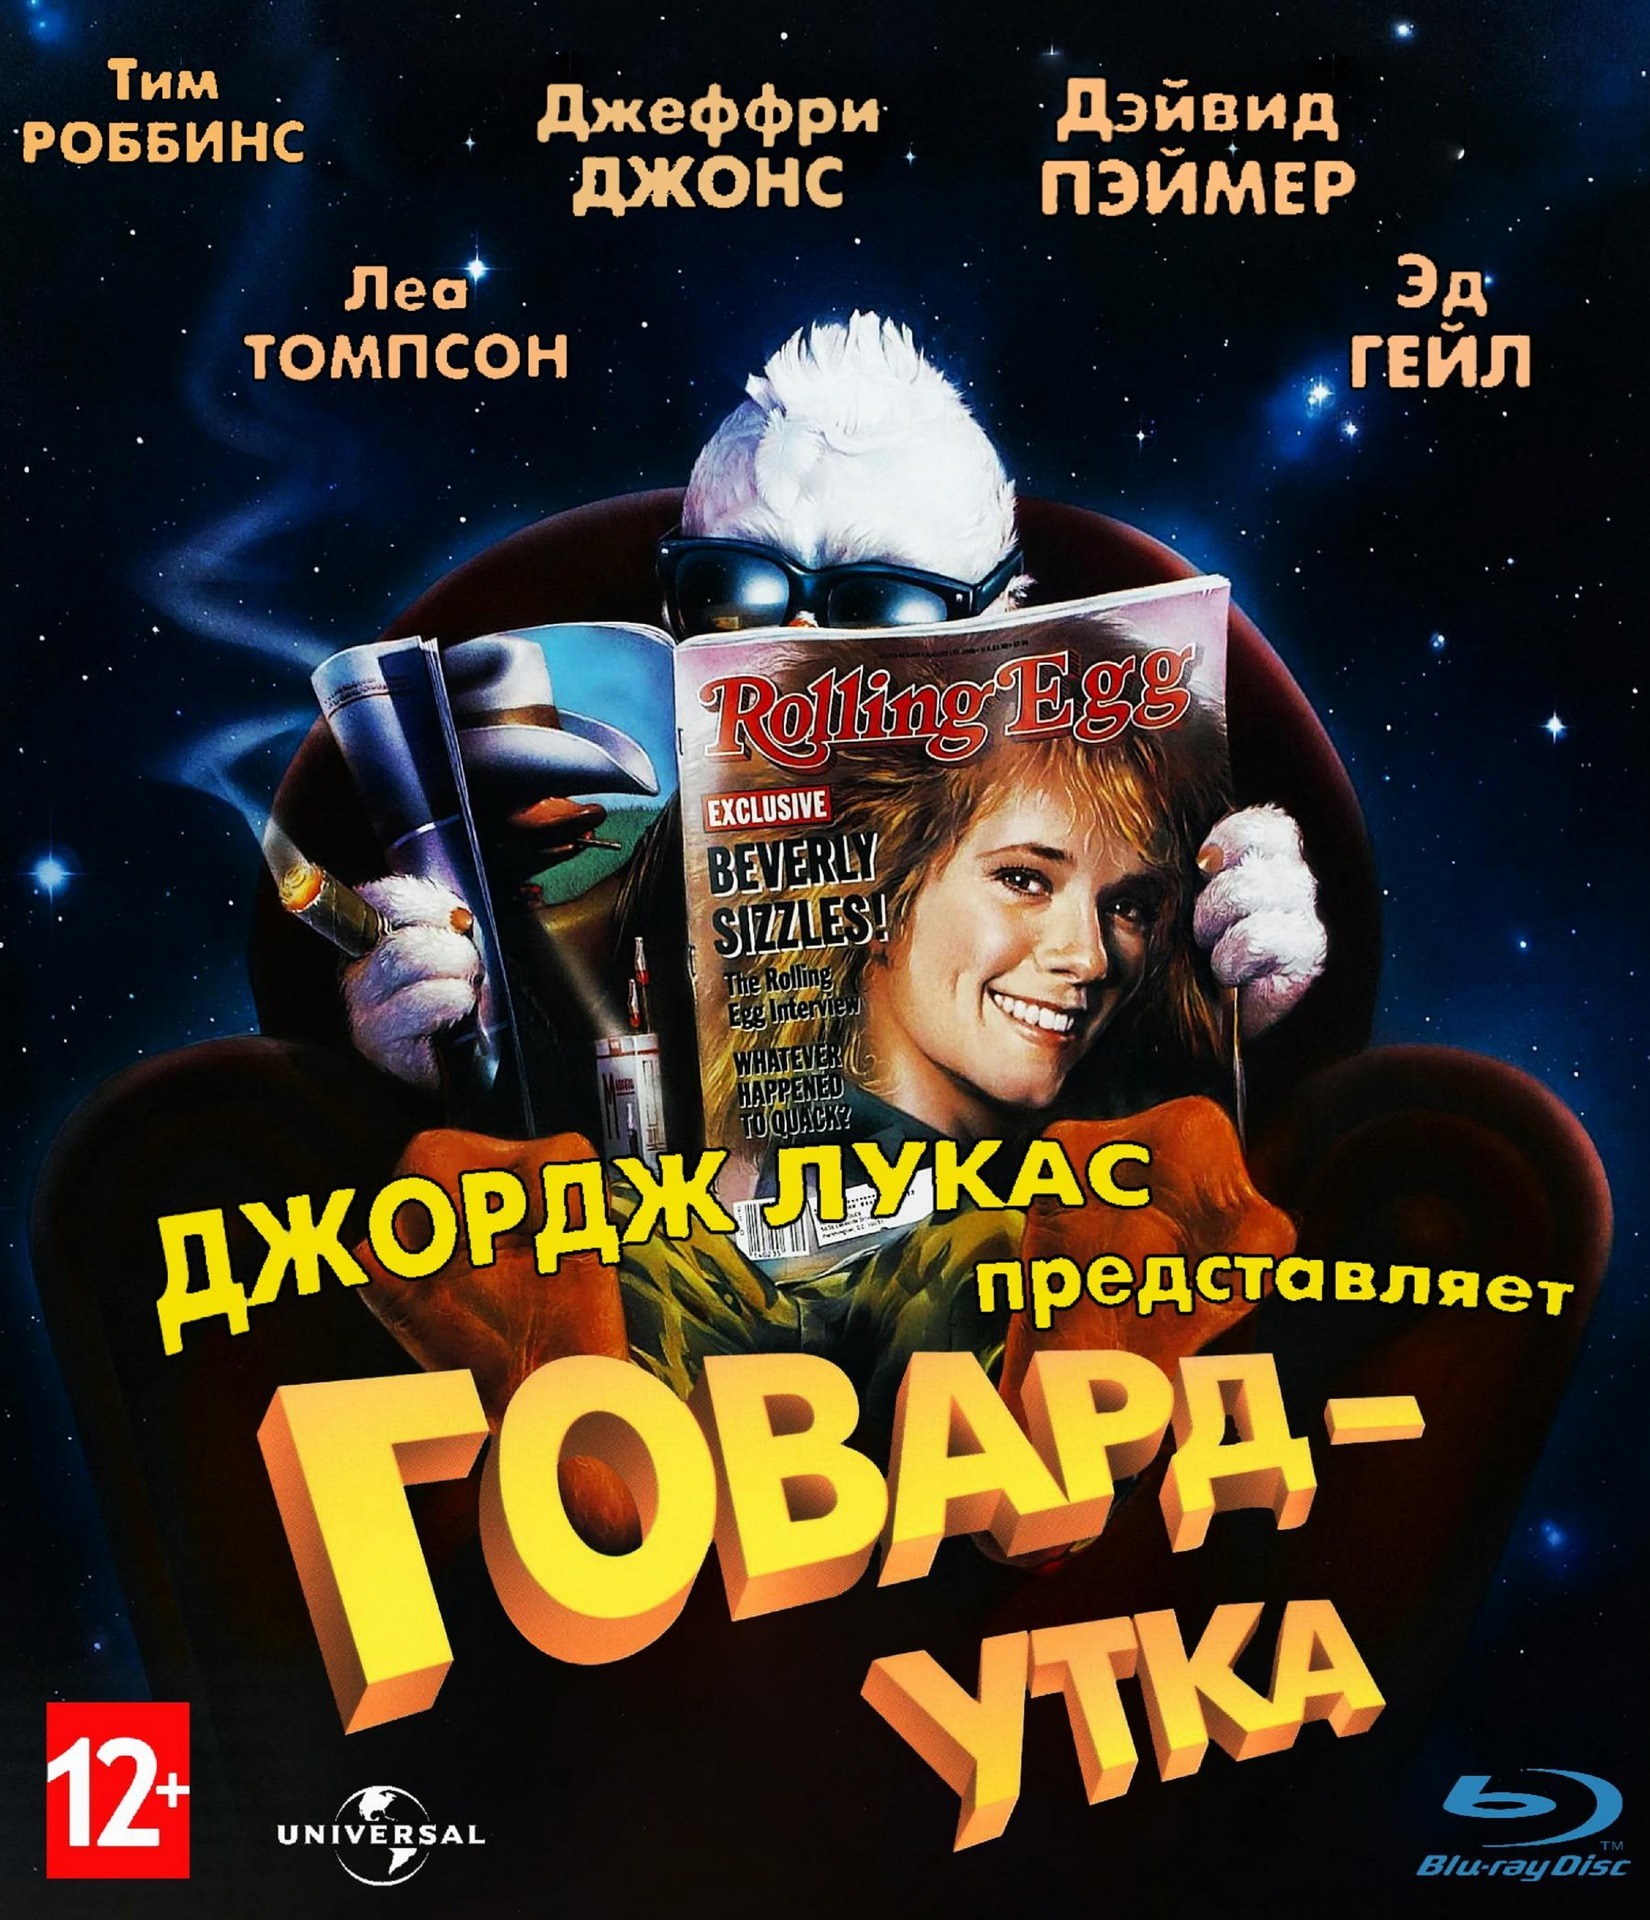 https://media.kg-portal.ru/movies/h/howardtheduck/posters/howardtheduck_2.jpg